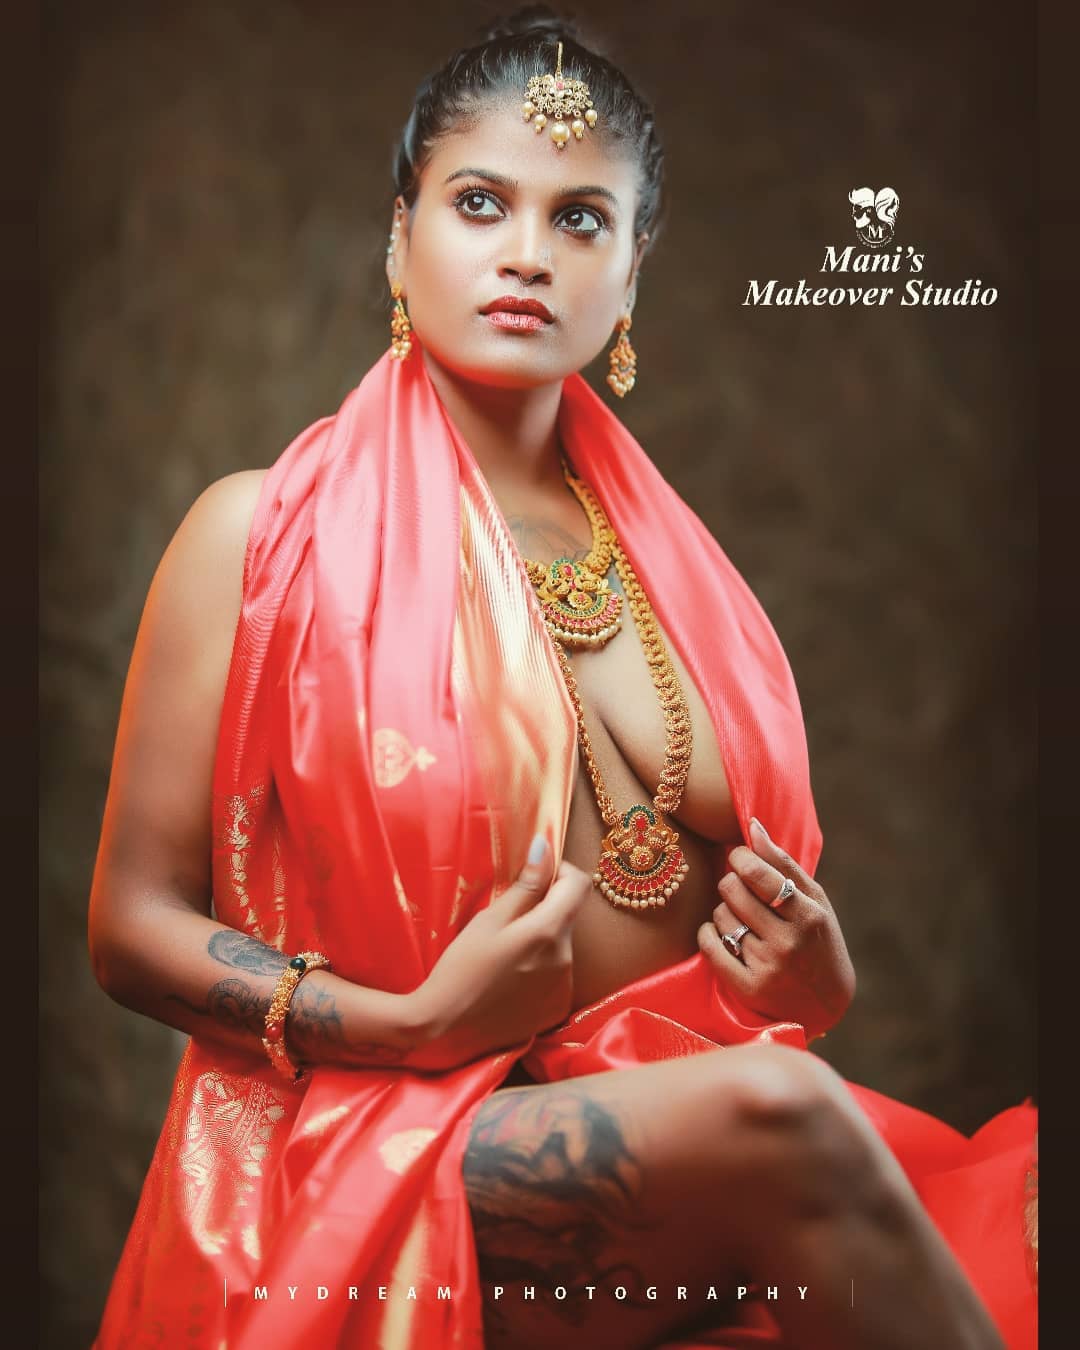 Dhanya Nath half nude photos - South Indian Actress